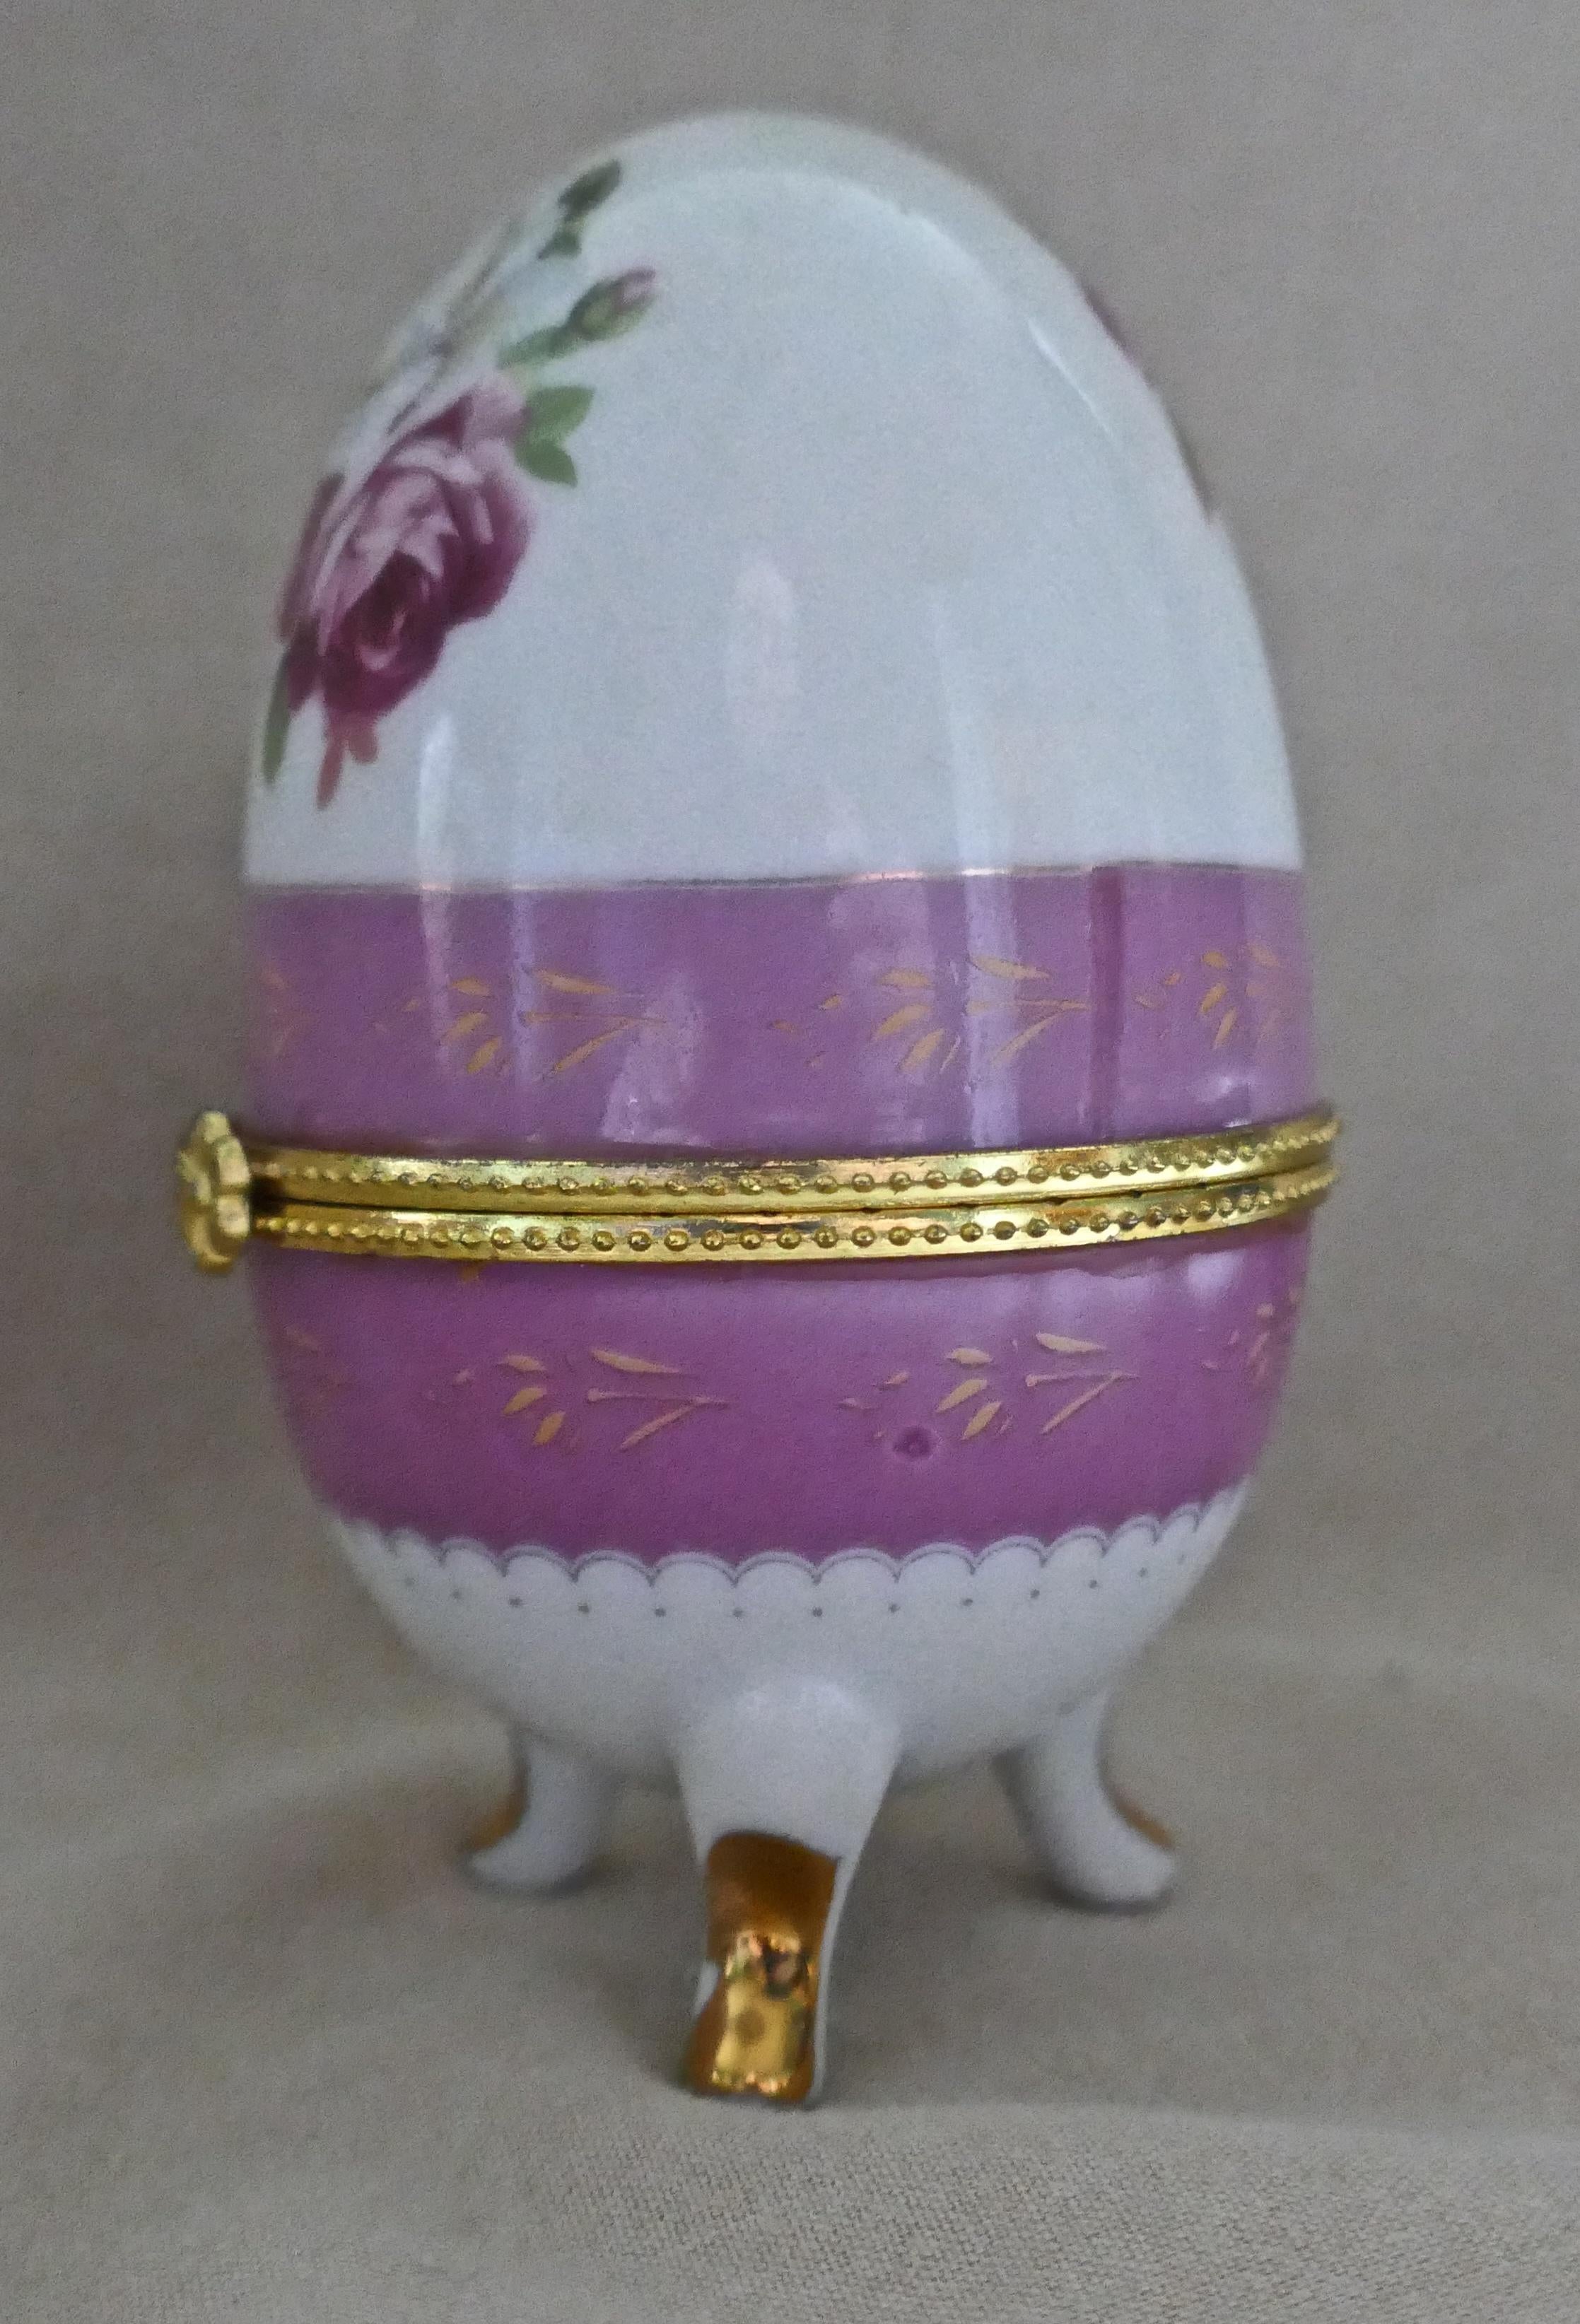 Vintage rose Chintz eiförmige Keramik Schmuckdose mit Scharnierdeckel

Dieses Keramik-Ei (Trinket Box) aus dem 20. Jahrhundert steht auf geformten Beinen und ist mit Rosen in Rosa und Gelb verziert.
Die Box ist in sehr gutem Zustand, der